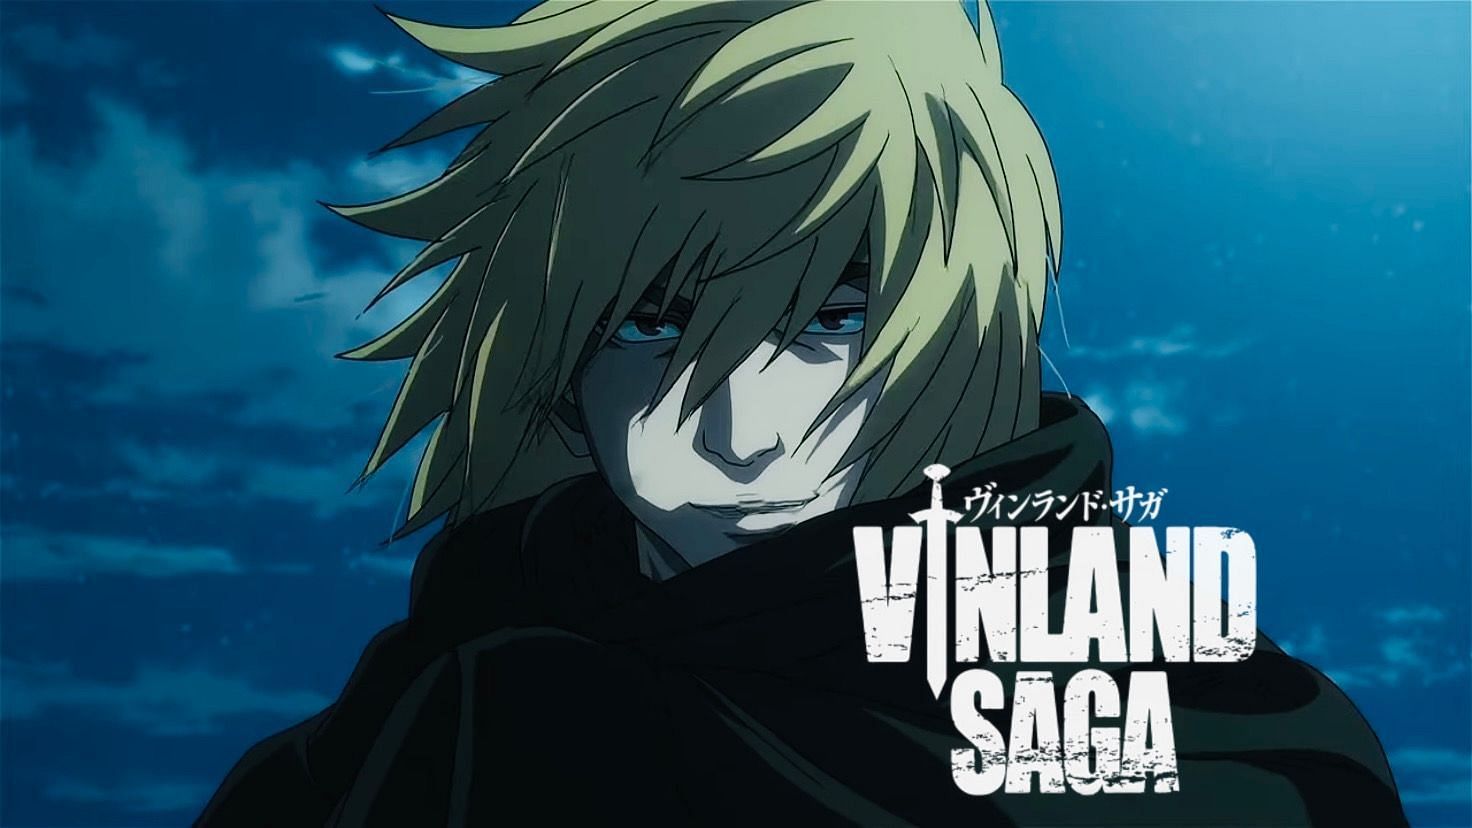 Vinland Saga temporada 2 - Ver todos los episodios online